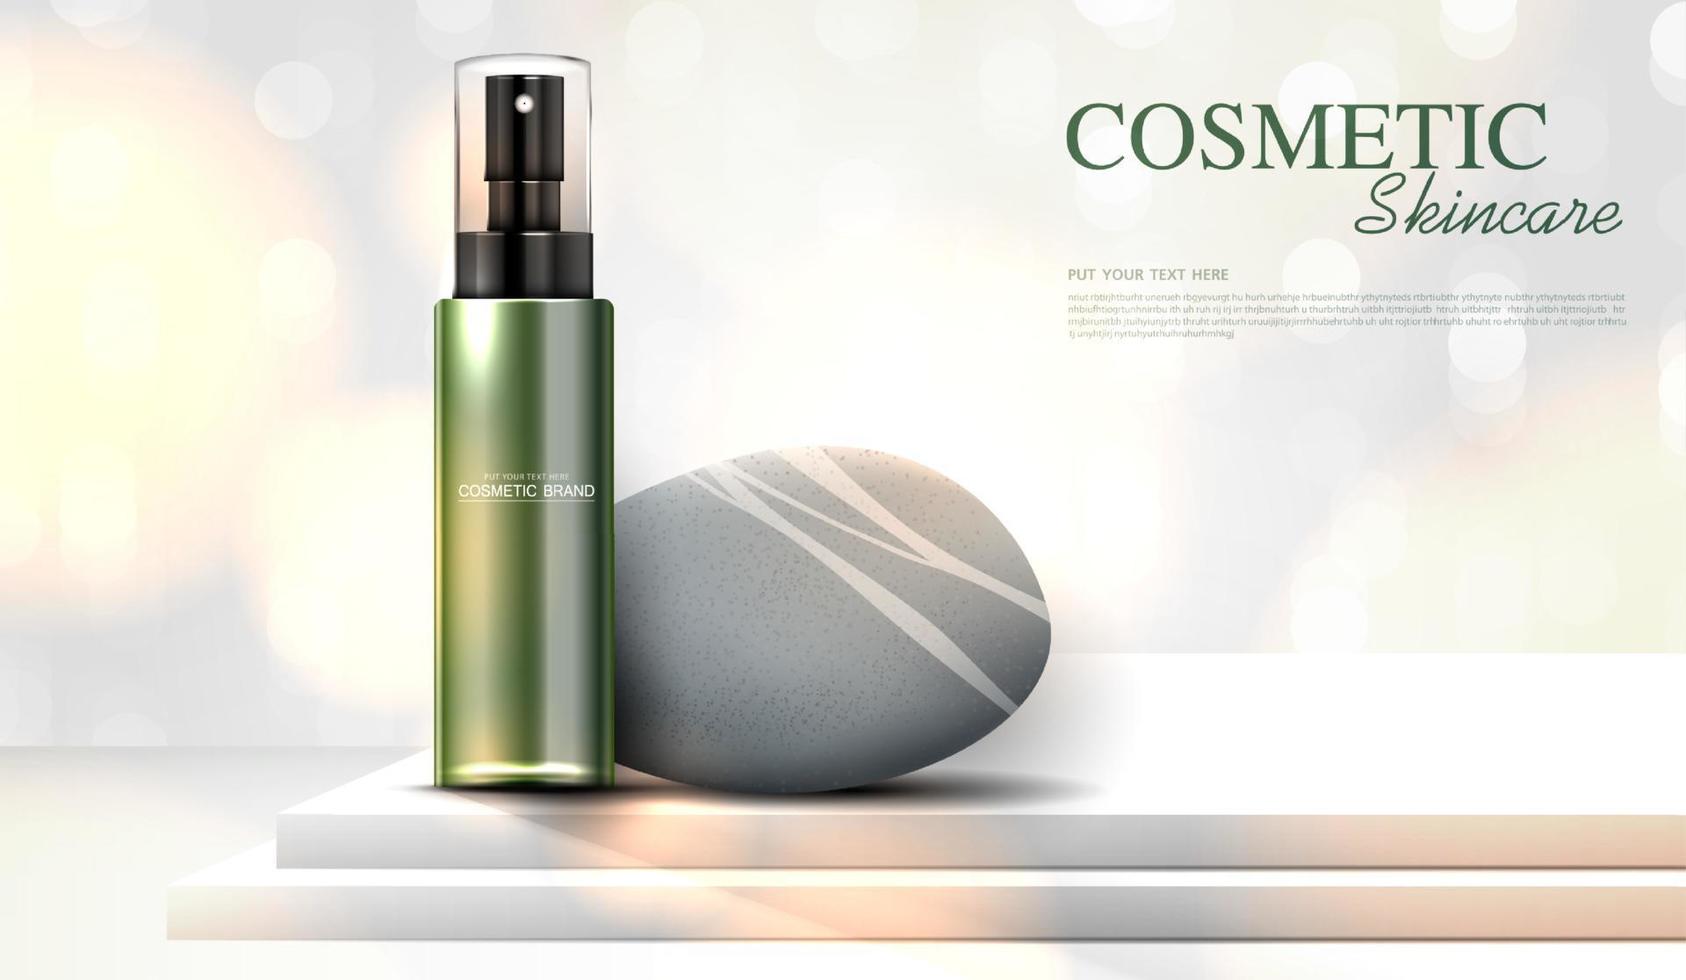 uppfriskande grönt te kosmetika eller hudvårdsprodukter annonser med flaska, bannerannons för skönhetsprodukter på bakgrunden glittrande ljuseffekt. vektor design